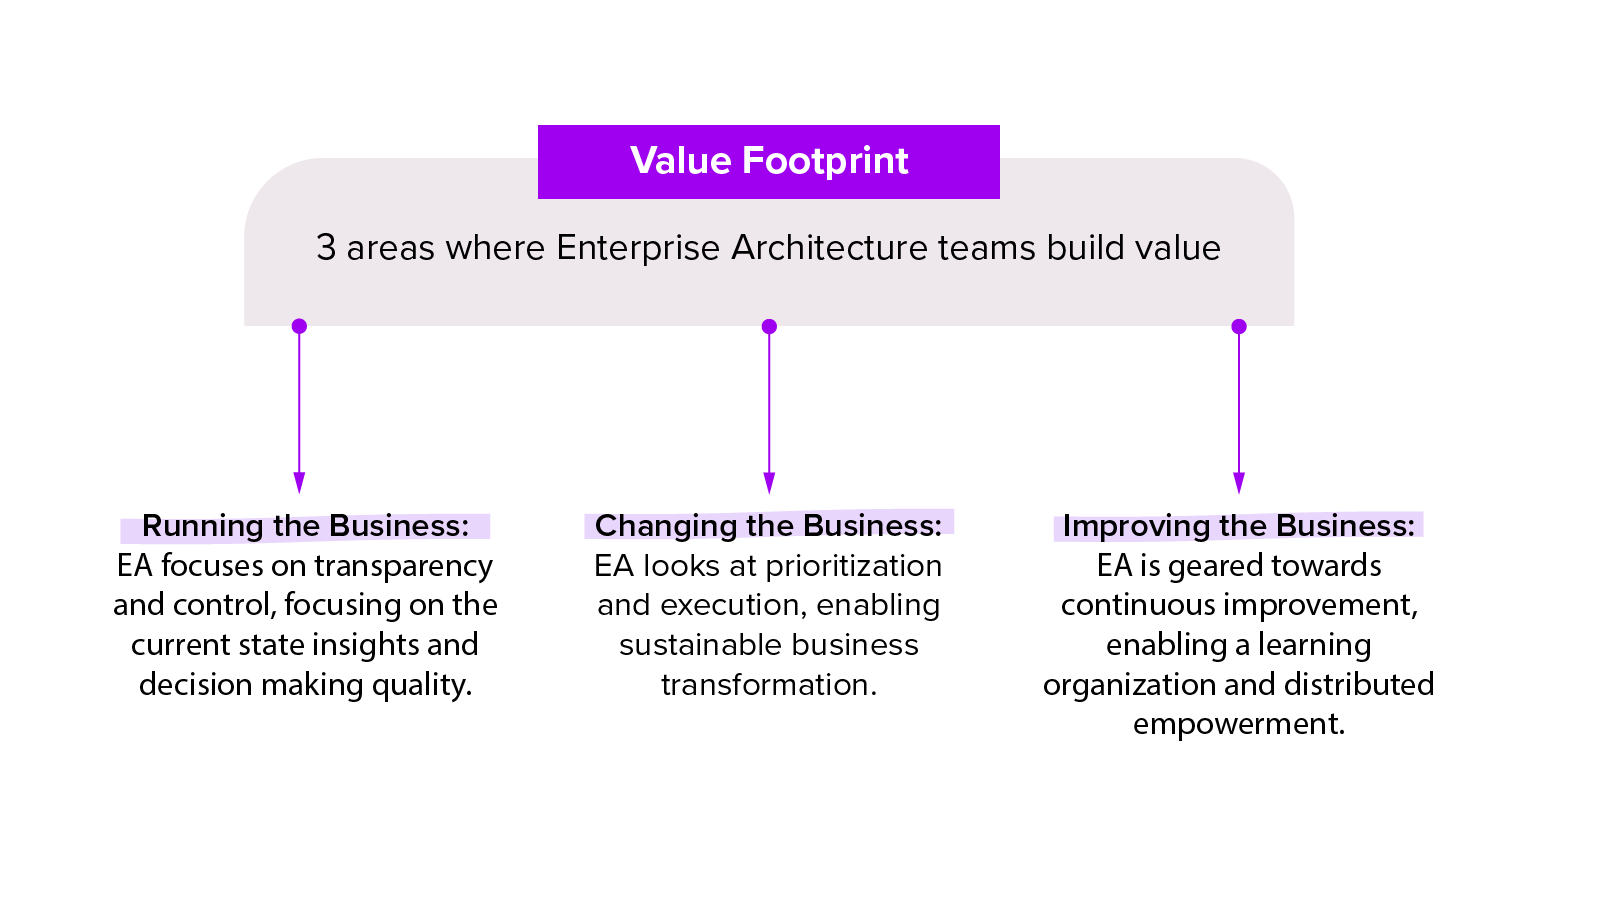 Value Footprint